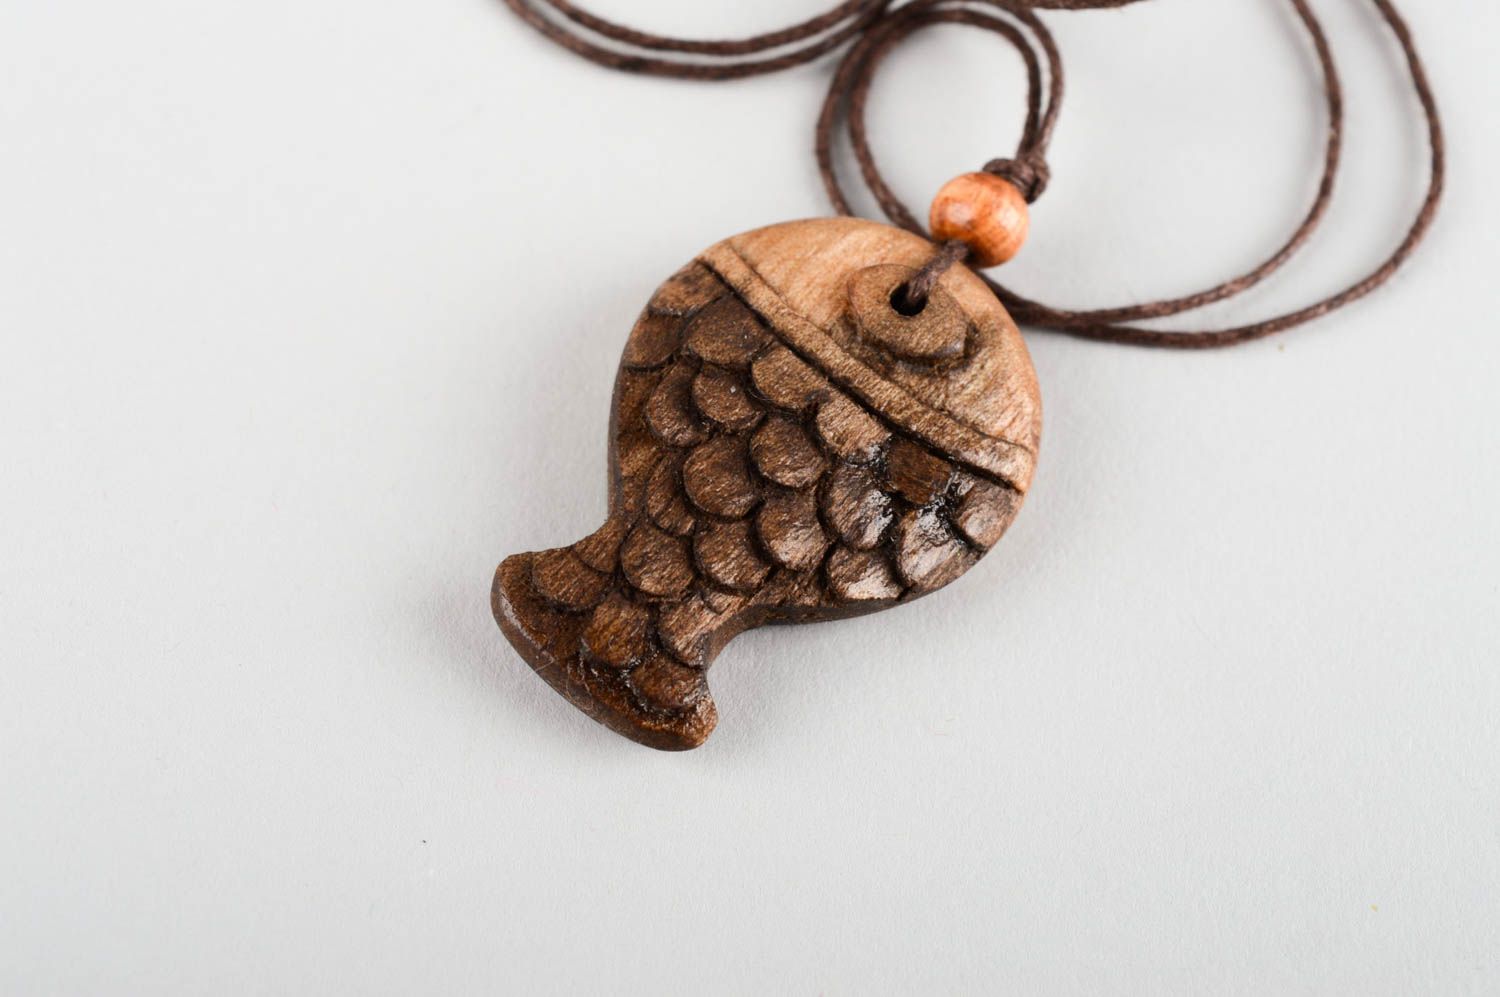 Stylish handmade wooden pendant beautiful jewellery wood craft small gifts photo 5